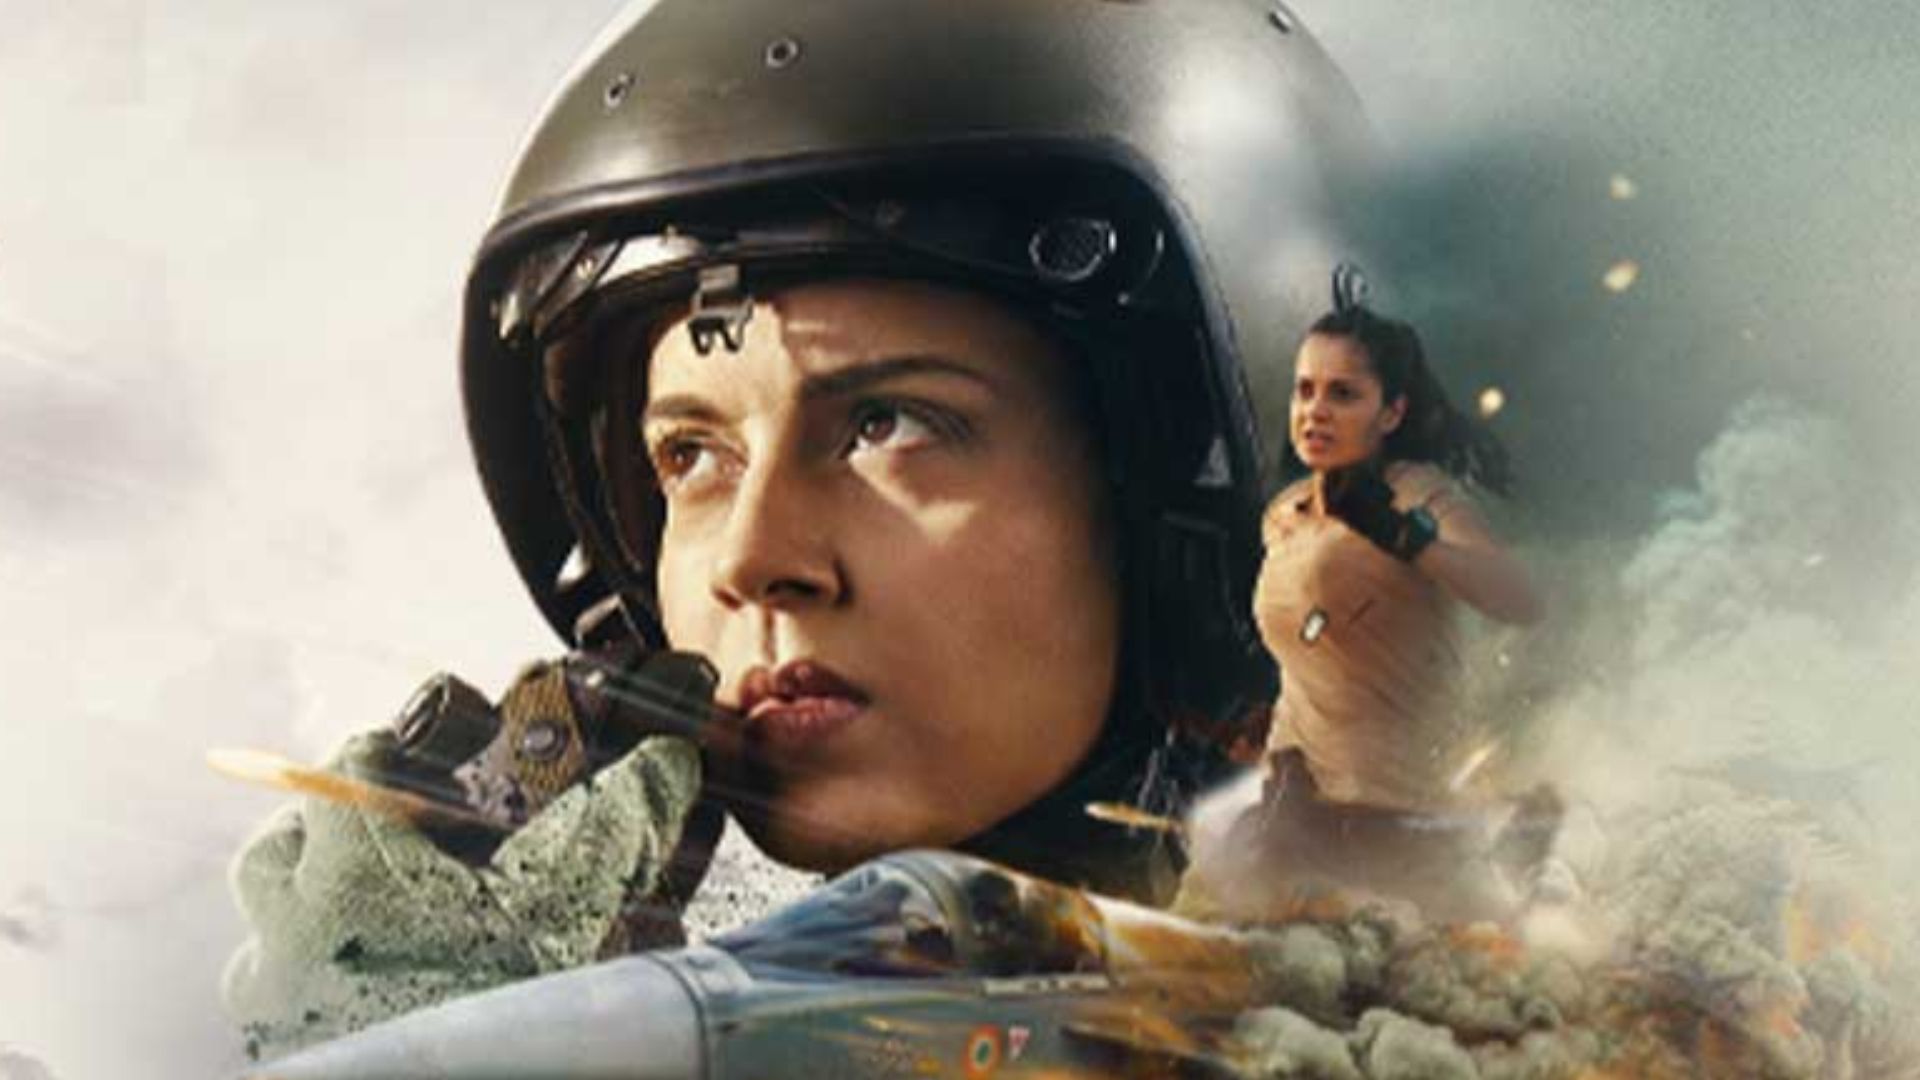 कंगना रनौत की फिल्म ‘तेजस’ 27 अक्टूबर को होगी रिलीज, टीजर जारी